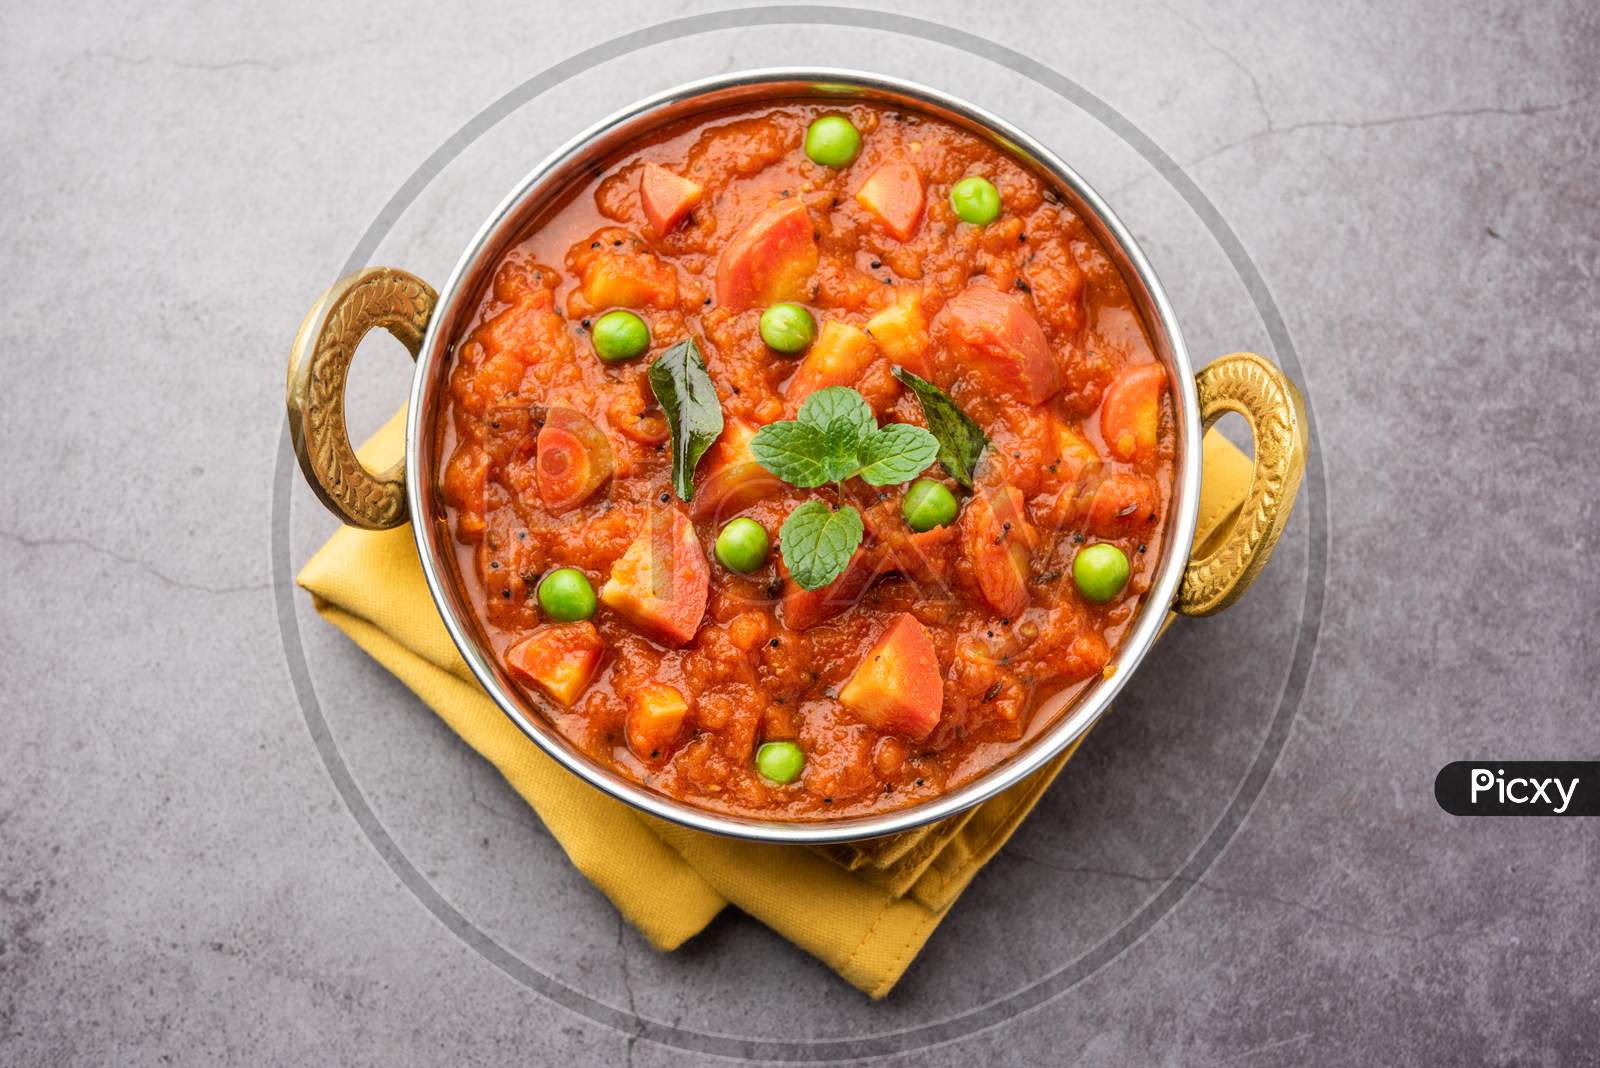 Gajar Tamatar Gravy Sabzi Or Indian Style Carrot Curry Recipe